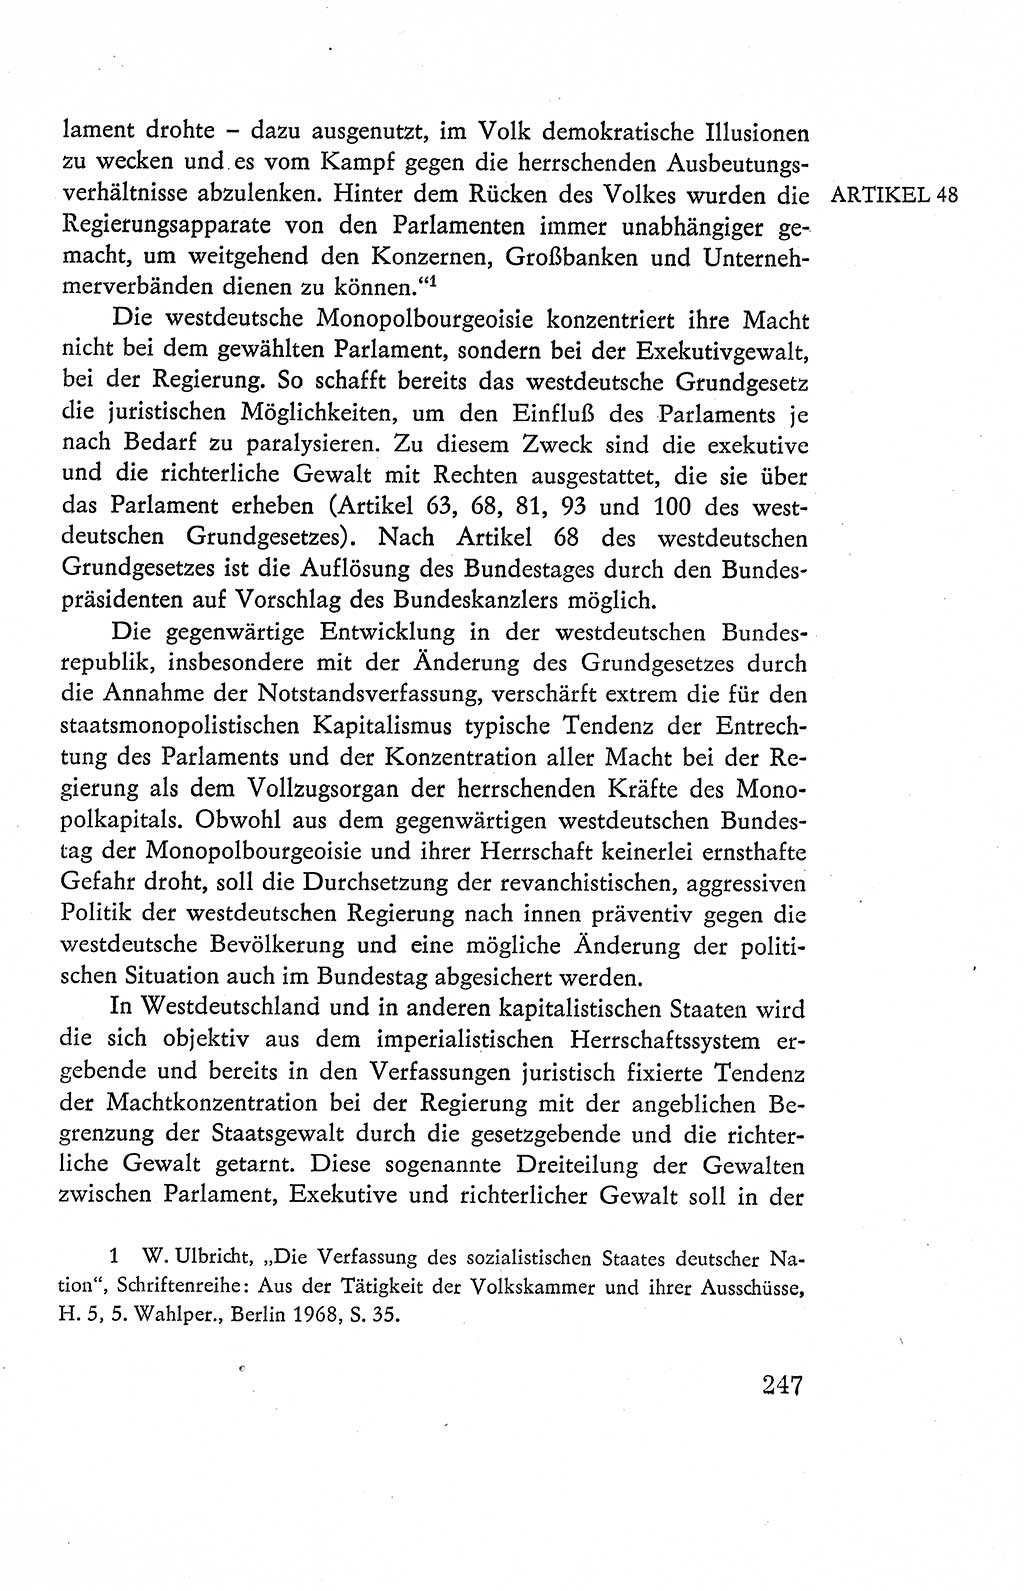 Verfassung der Deutschen Demokratischen Republik (DDR), Dokumente, Kommentar 1969, Band 2, Seite 247 (Verf. DDR Dok. Komm. 1969, Bd. 2, S. 247)